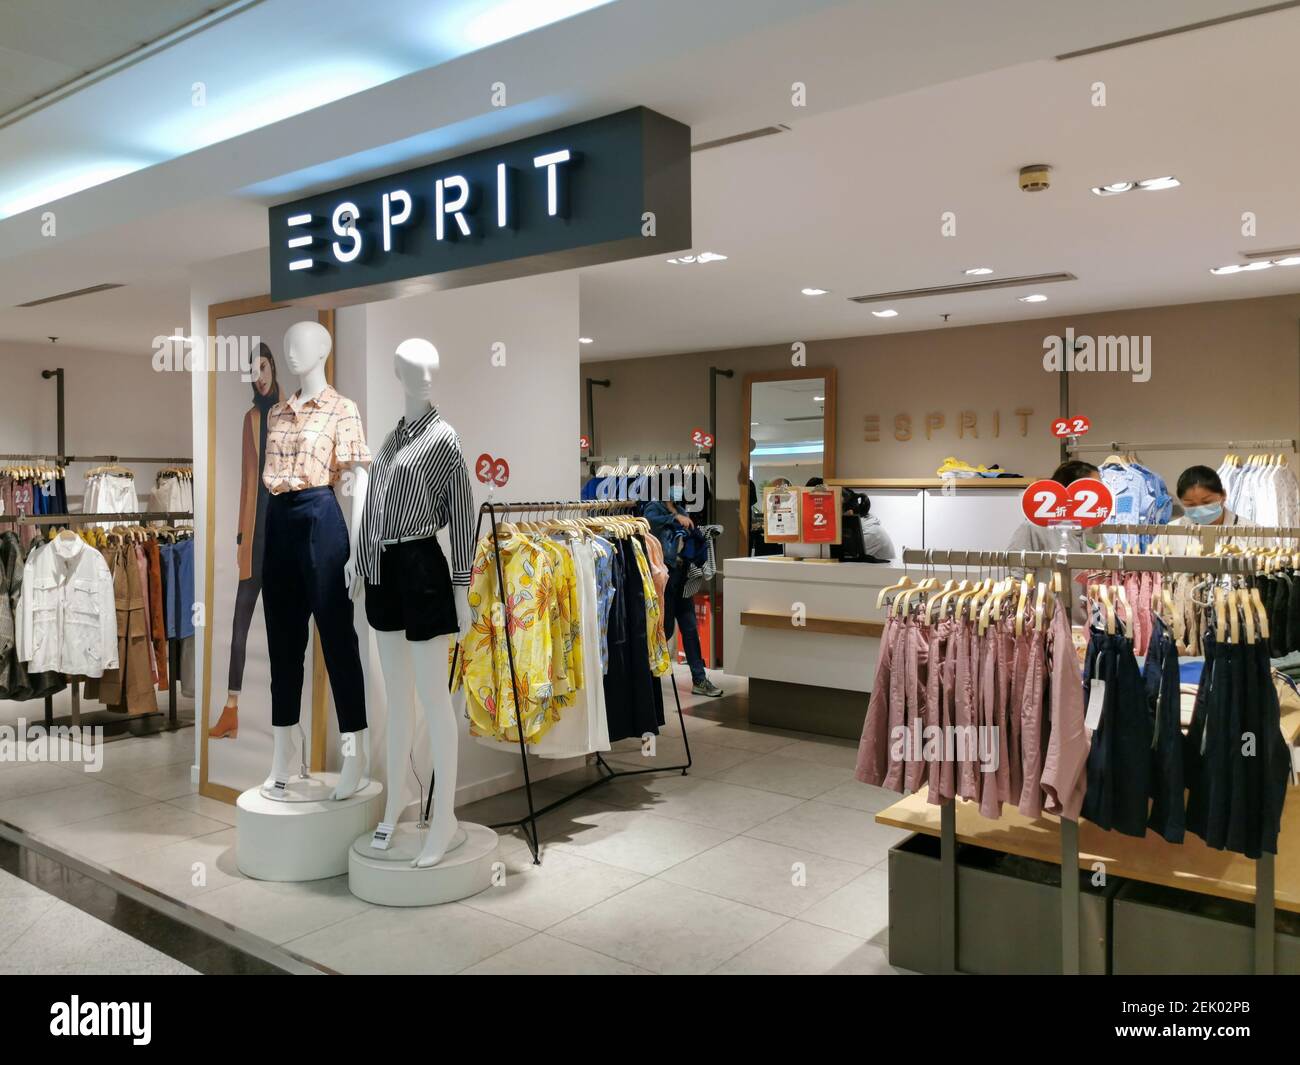 Shanghai,CHINA-el 16 de abril de 2020, la tienda Esprit ubicada la plaza de compras de la calle peatonal nang East Road, Shanghai, vendió toda la ropa con un descuento del 2%.